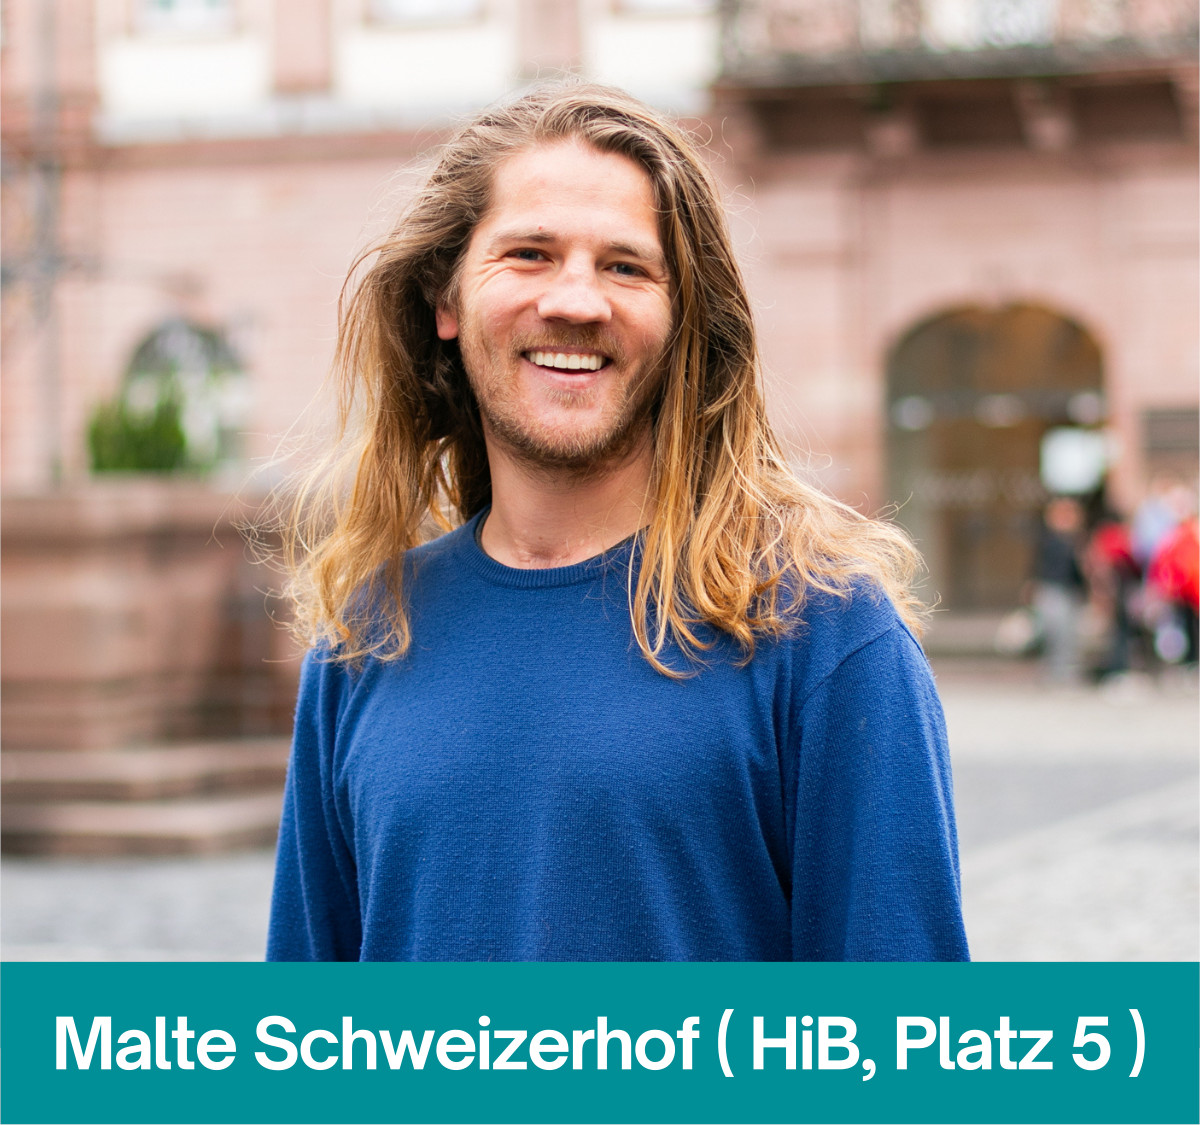 Malte Schweizerhof (HiB #5)